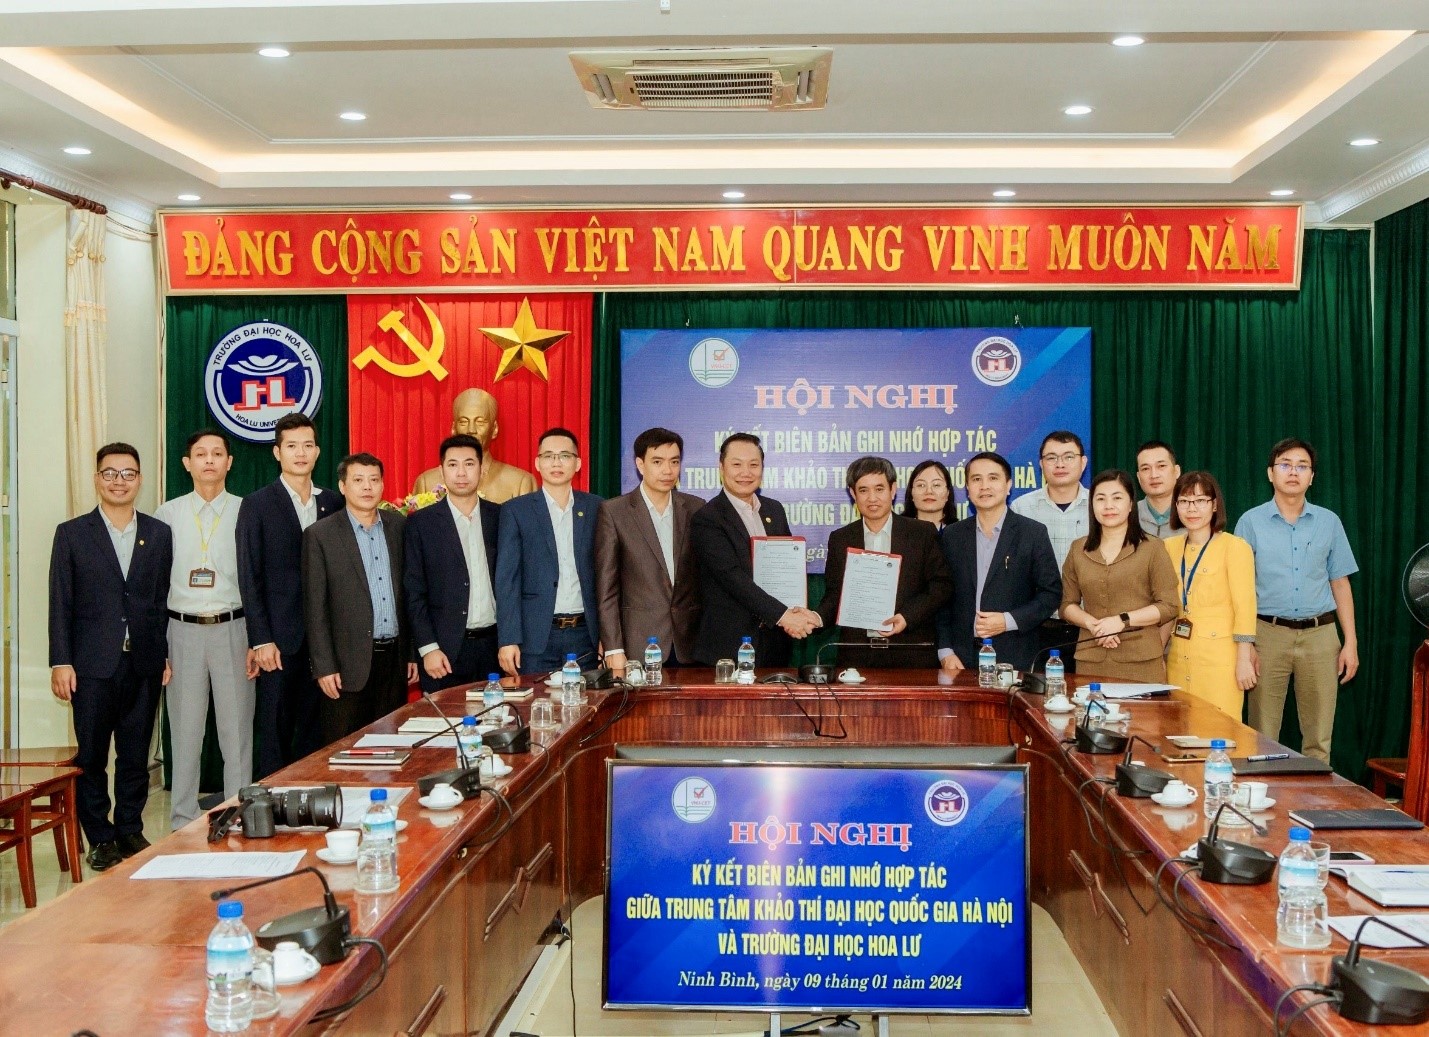 Lễ kí kết biên bản ghi nhớ hợp tác giữa Trung tâm khảo thí Đại học Quốc gia Hà Nội và Trường Đại học Hoa Lư